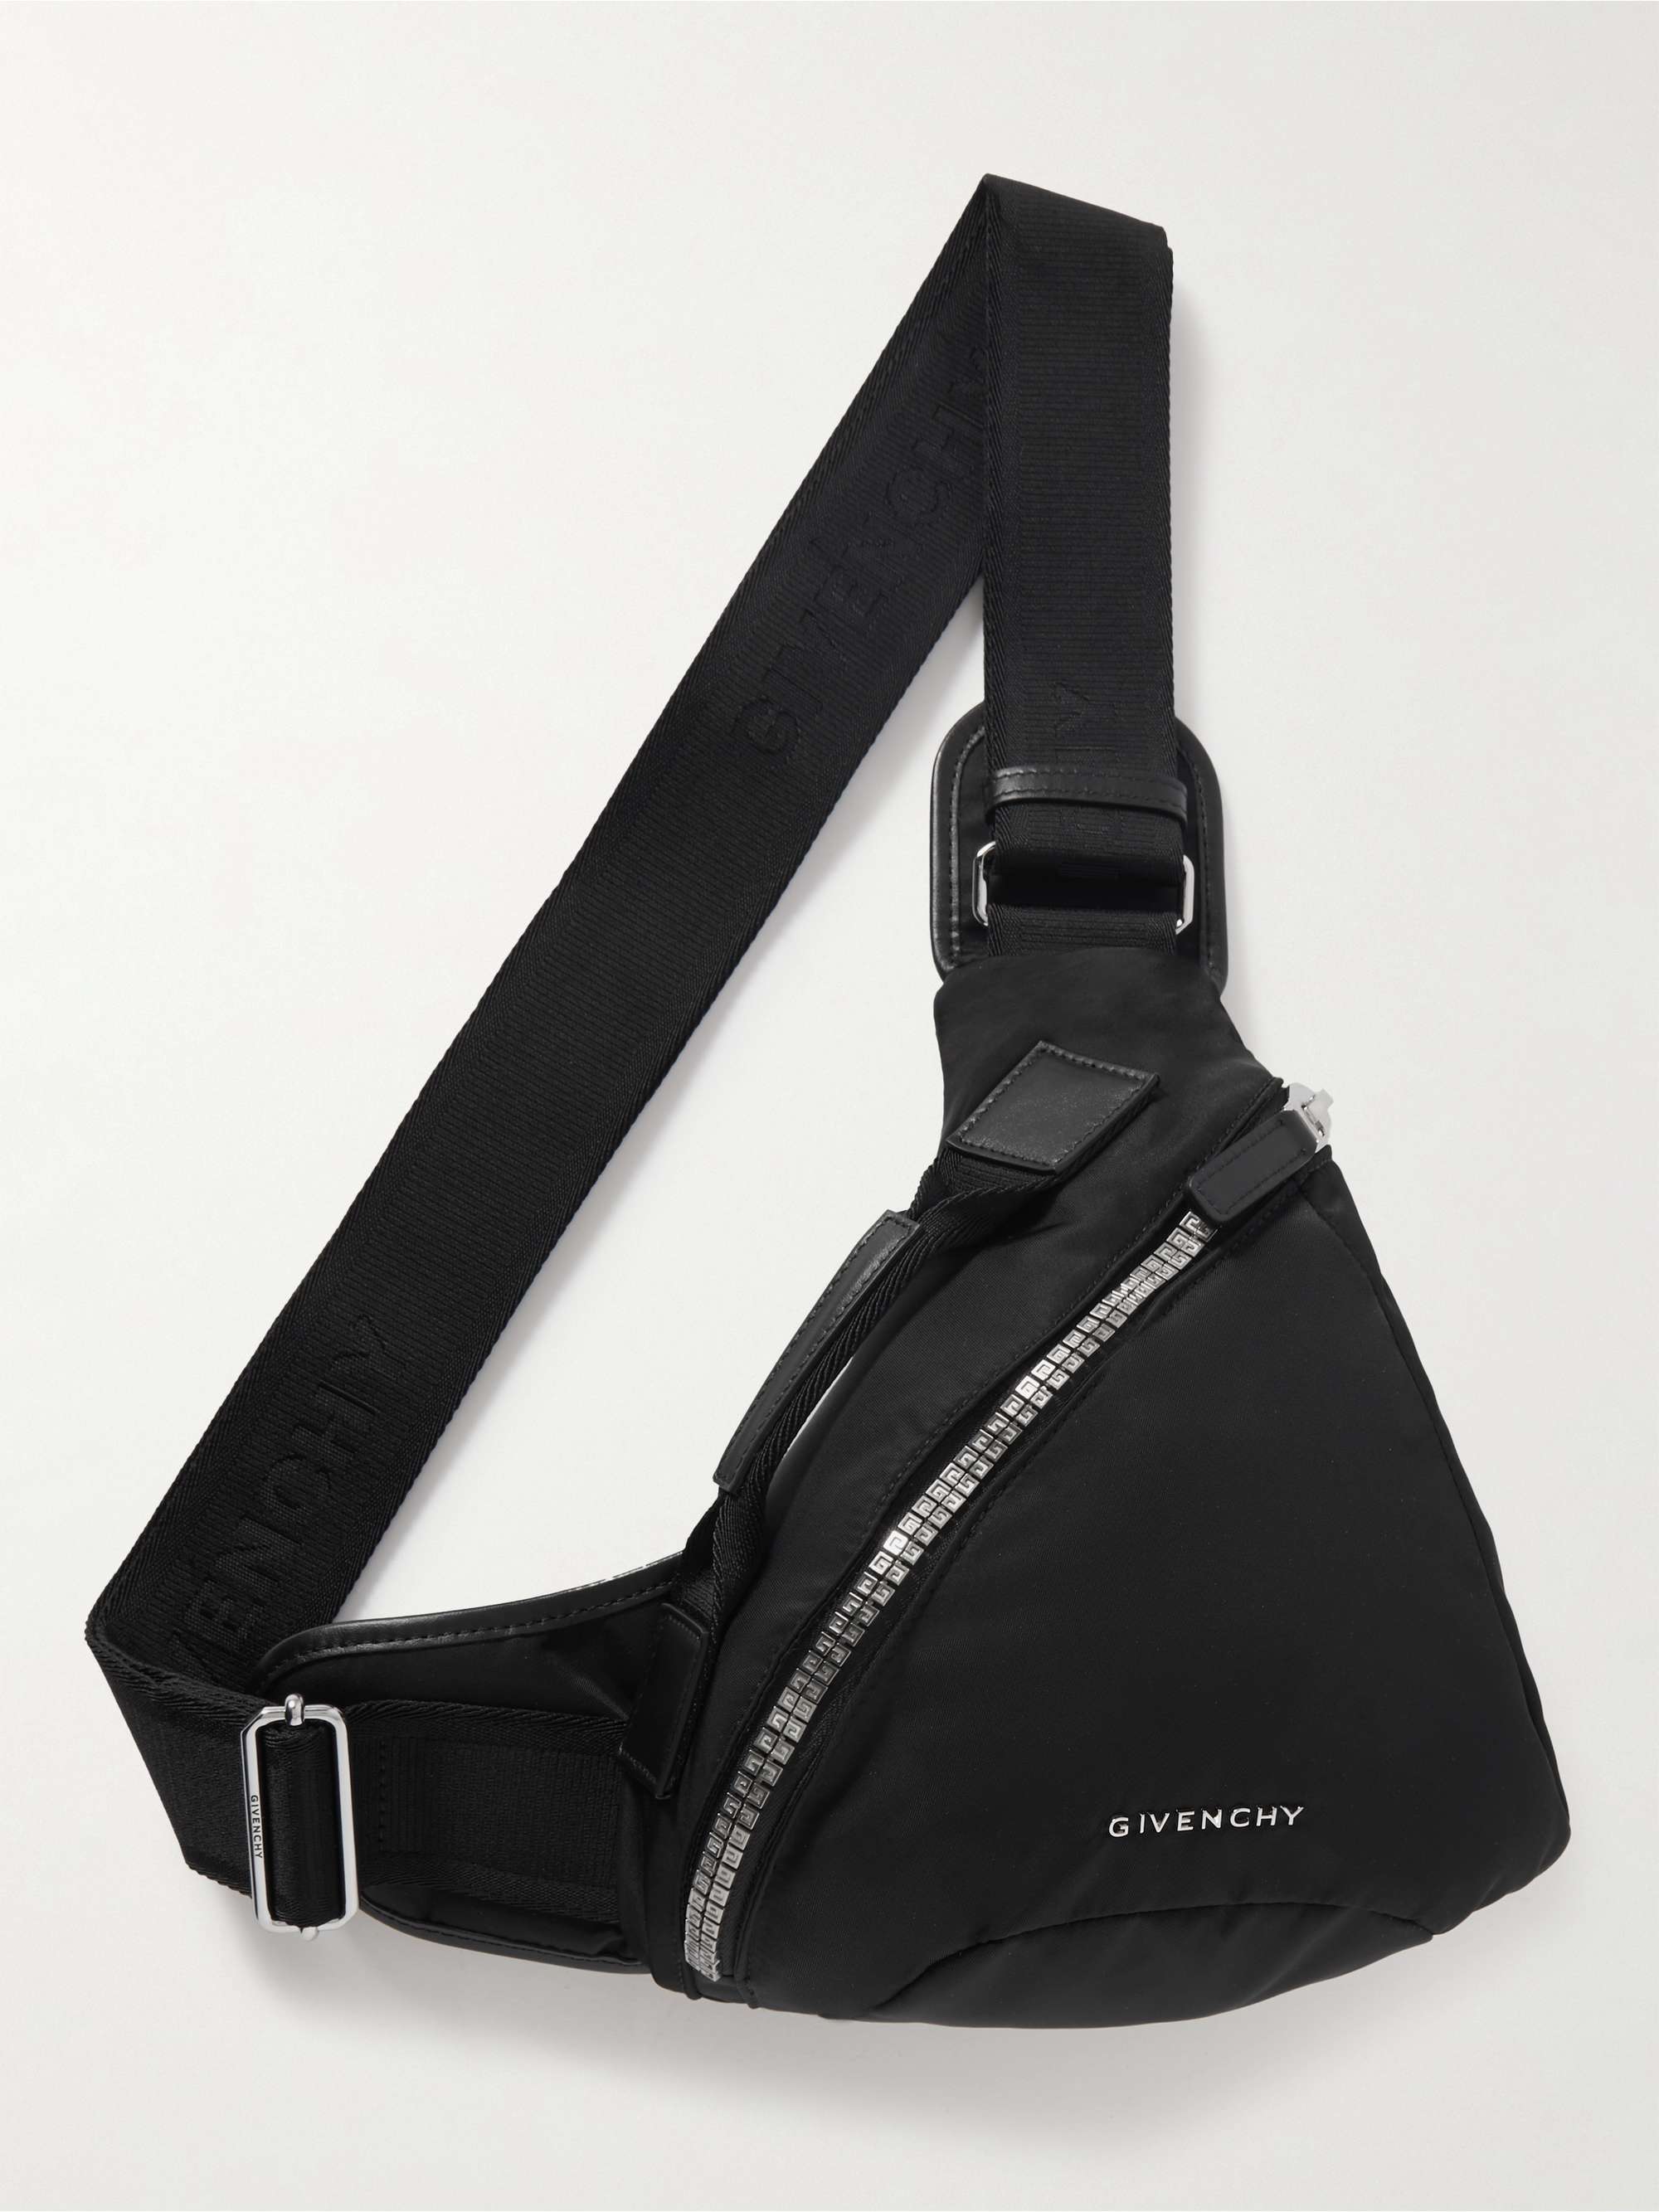 GIVENCHY G-Zip Leather-Trimmed Nylon Belt Bag for Men